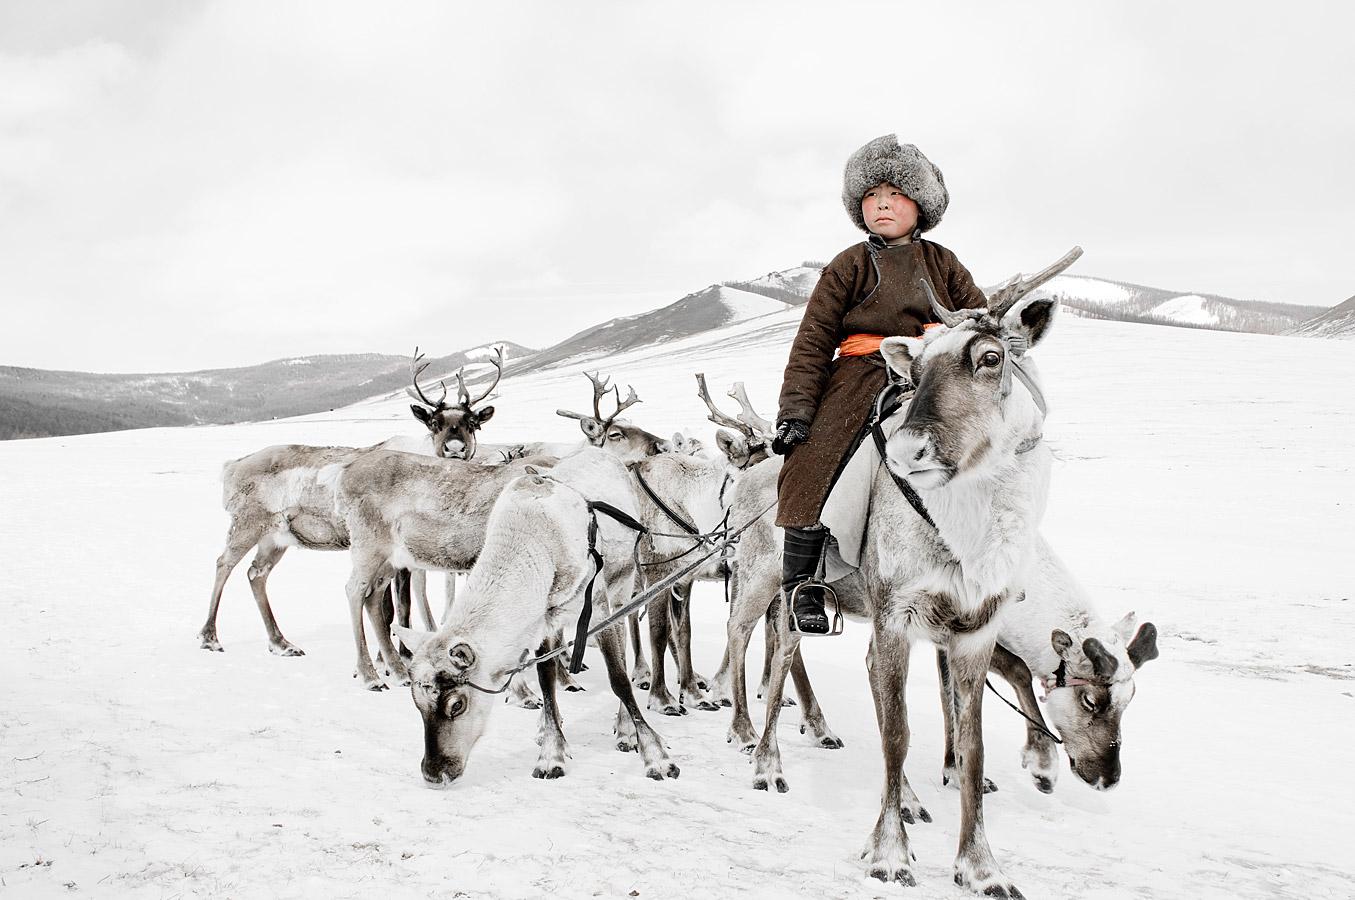  Jimmy Nelson - XX 204 // XX Tsaatan, Mongolei, Fotografie 2011, gedruckt nach